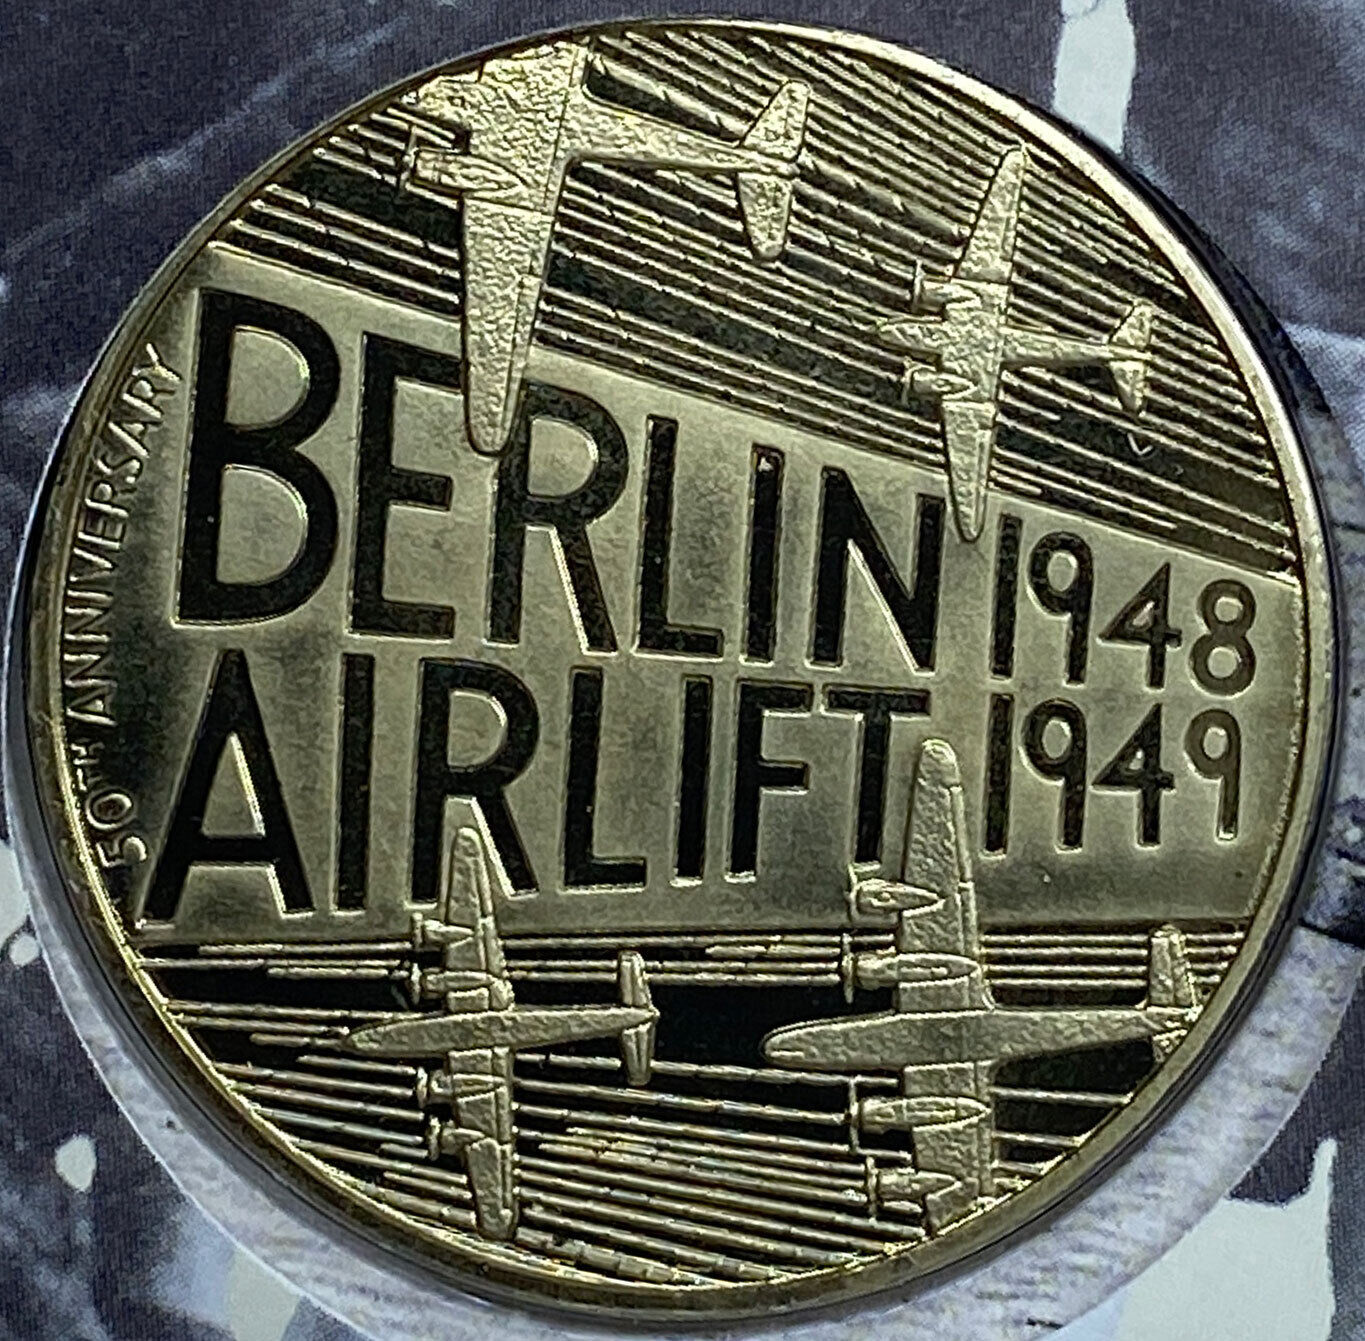 1999 UK United Kingdom BERLIN AIRLIFT AVIATION WAR Vintage OLD Medal i114443